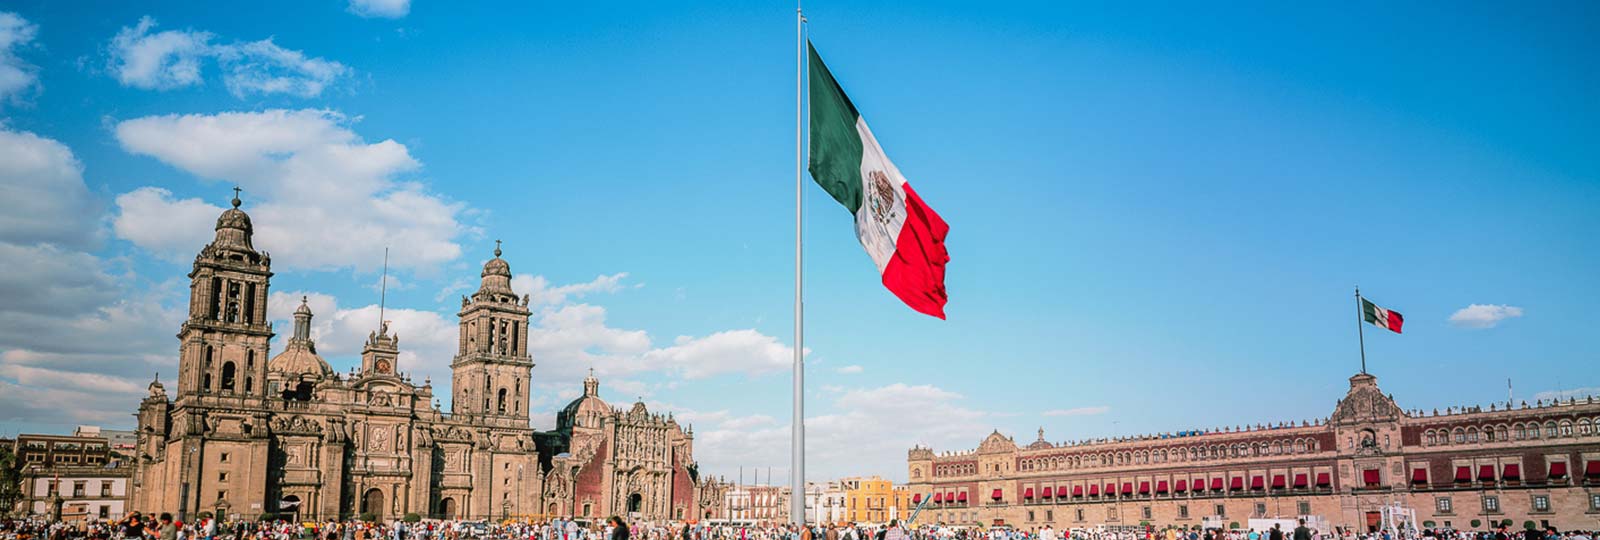 Vận chuyển khẩu trang đi Mexico bằng đường hàng không giá rẻ